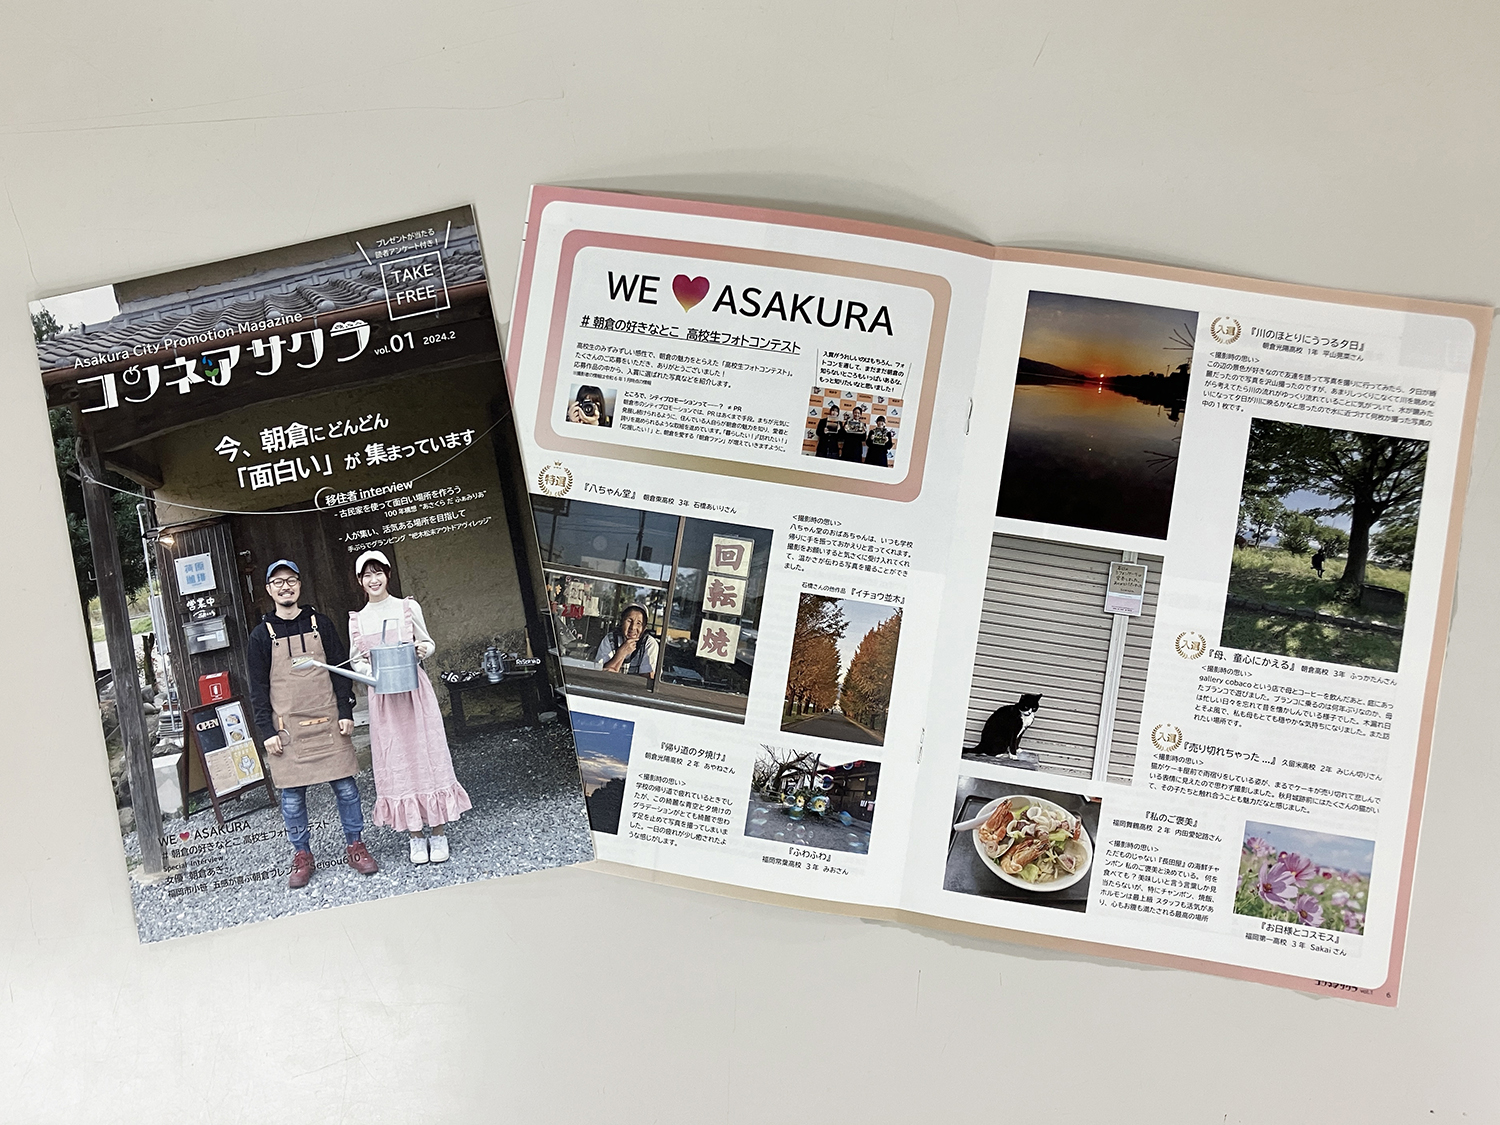 シティプロモーションマガジン「コンネアサクラ」創刊！<br />『今、朝倉にどんどん「面白い」が集まっています』